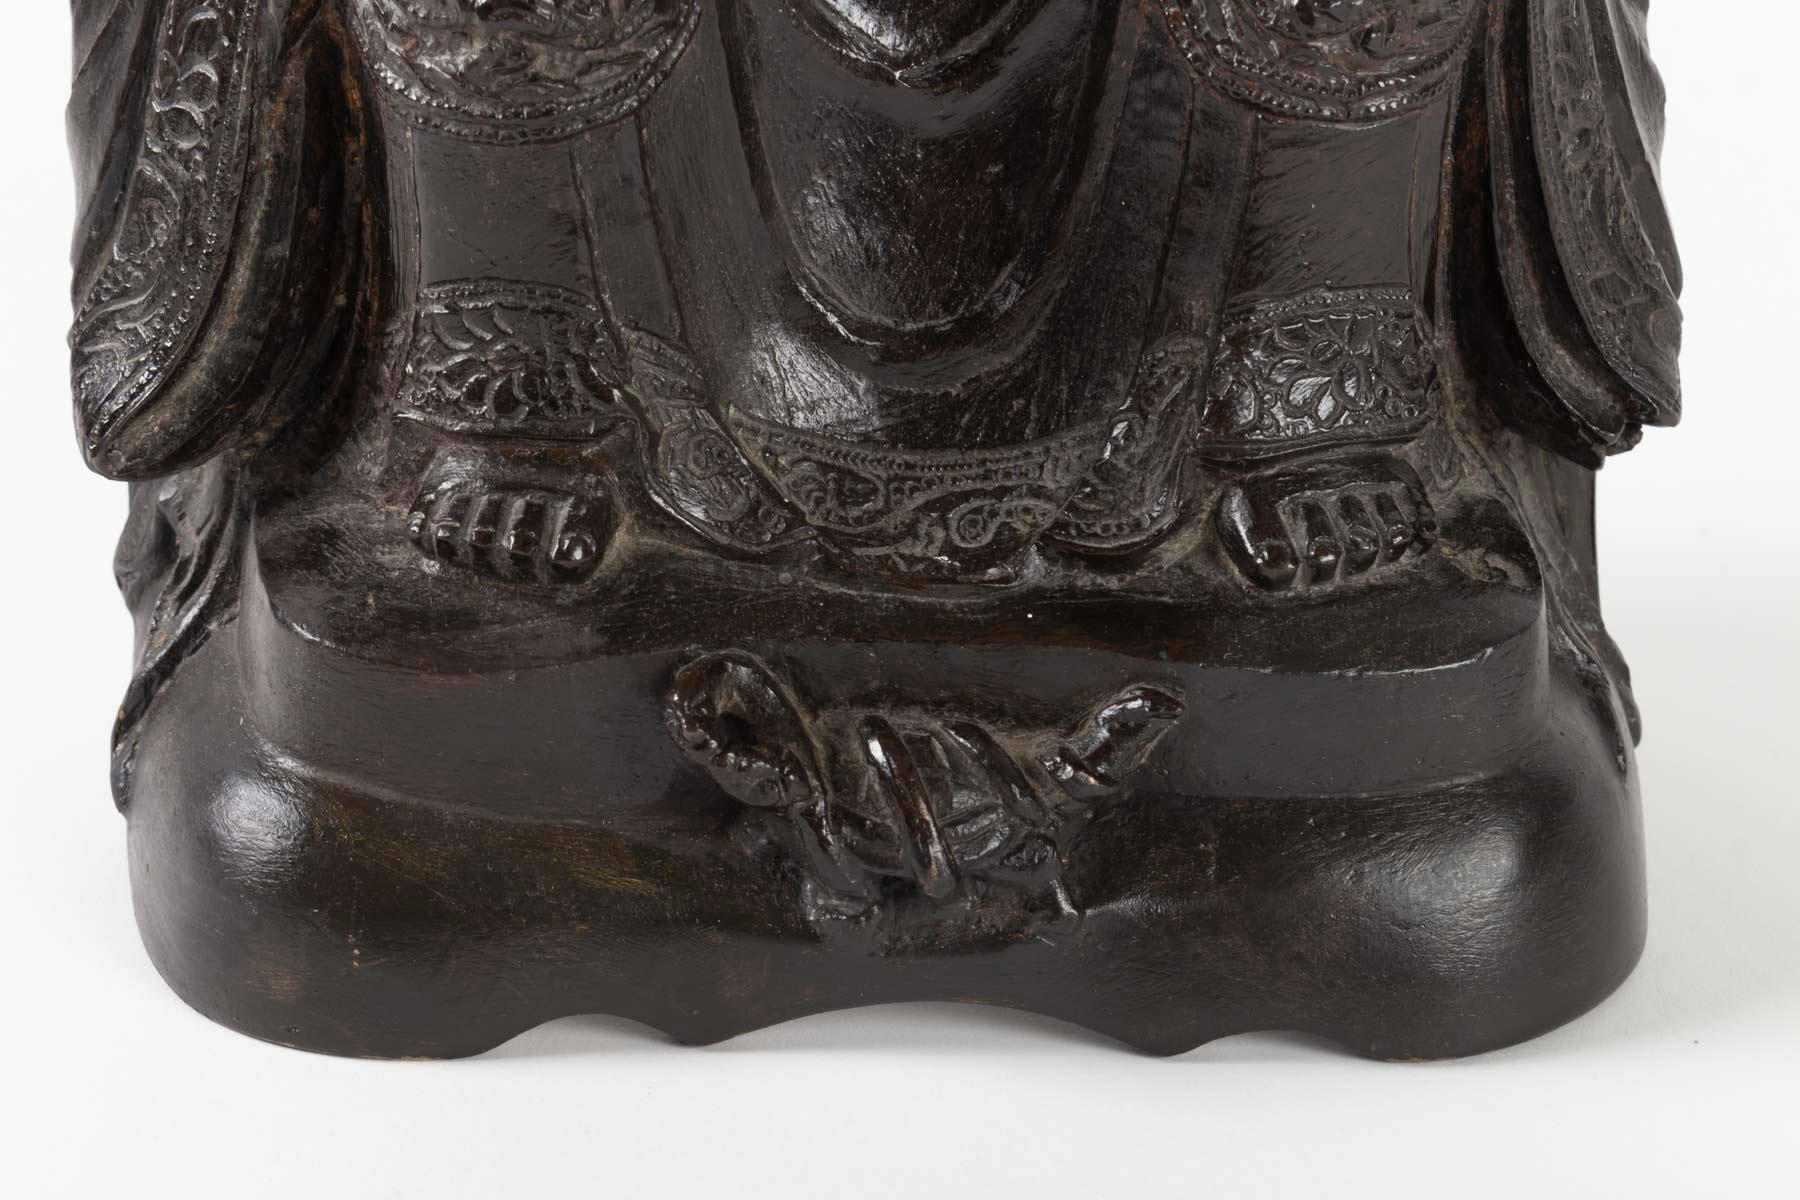 Chinese Bronze Buddha, China, 17th Century